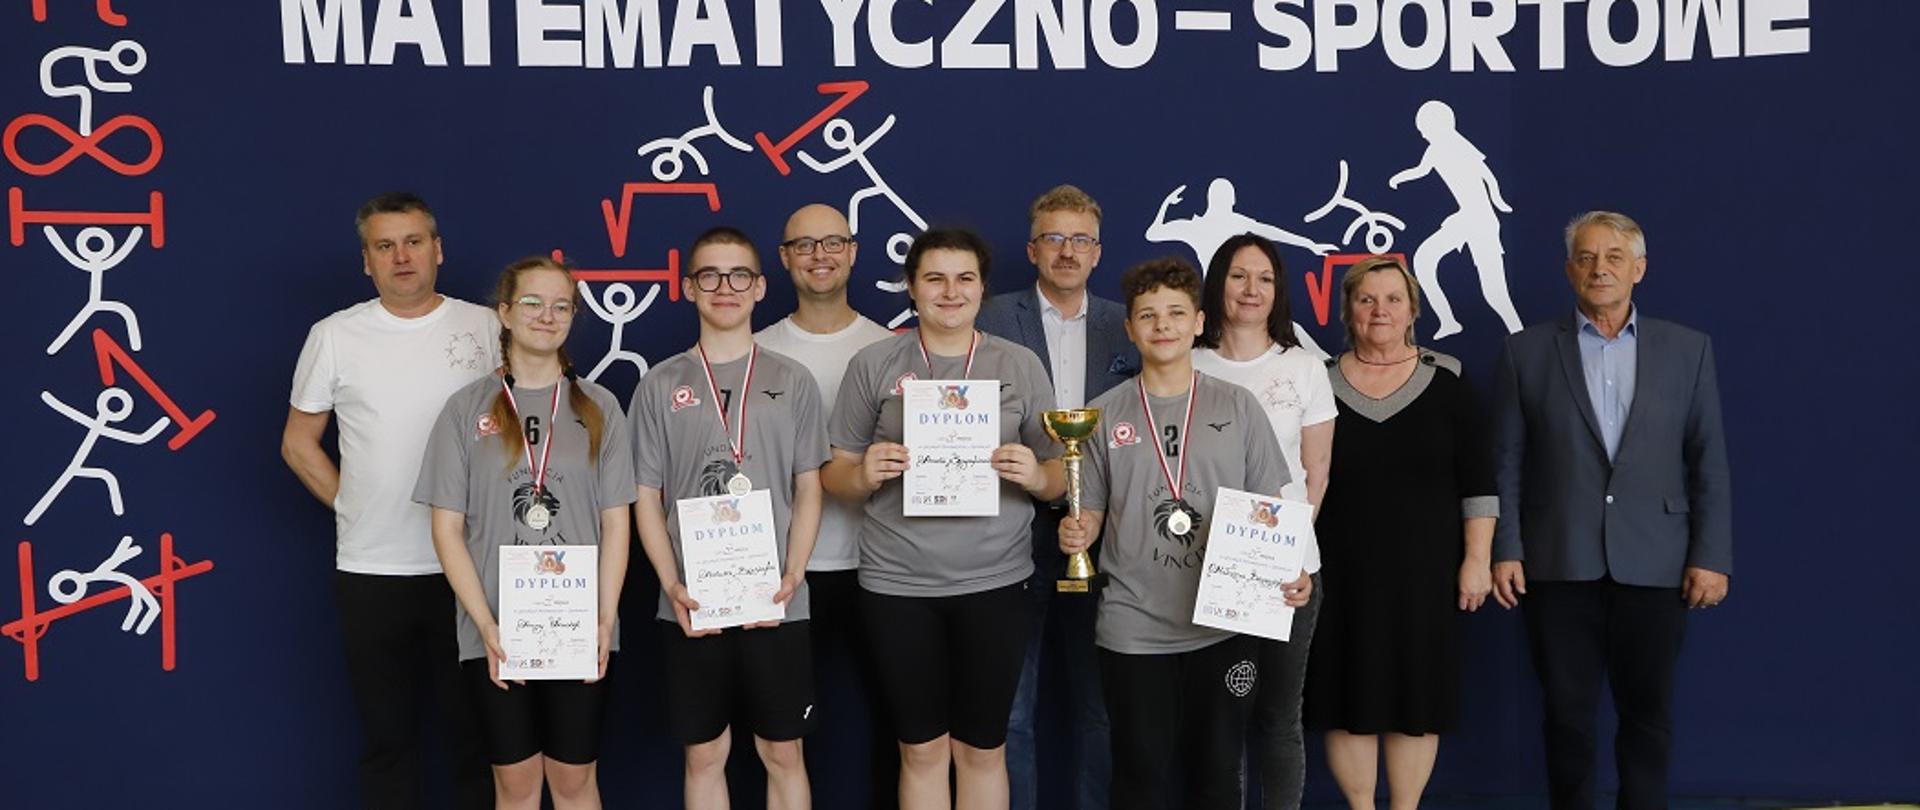 Finał Igrzysk Matematyczno - Sportowych w Królewcu